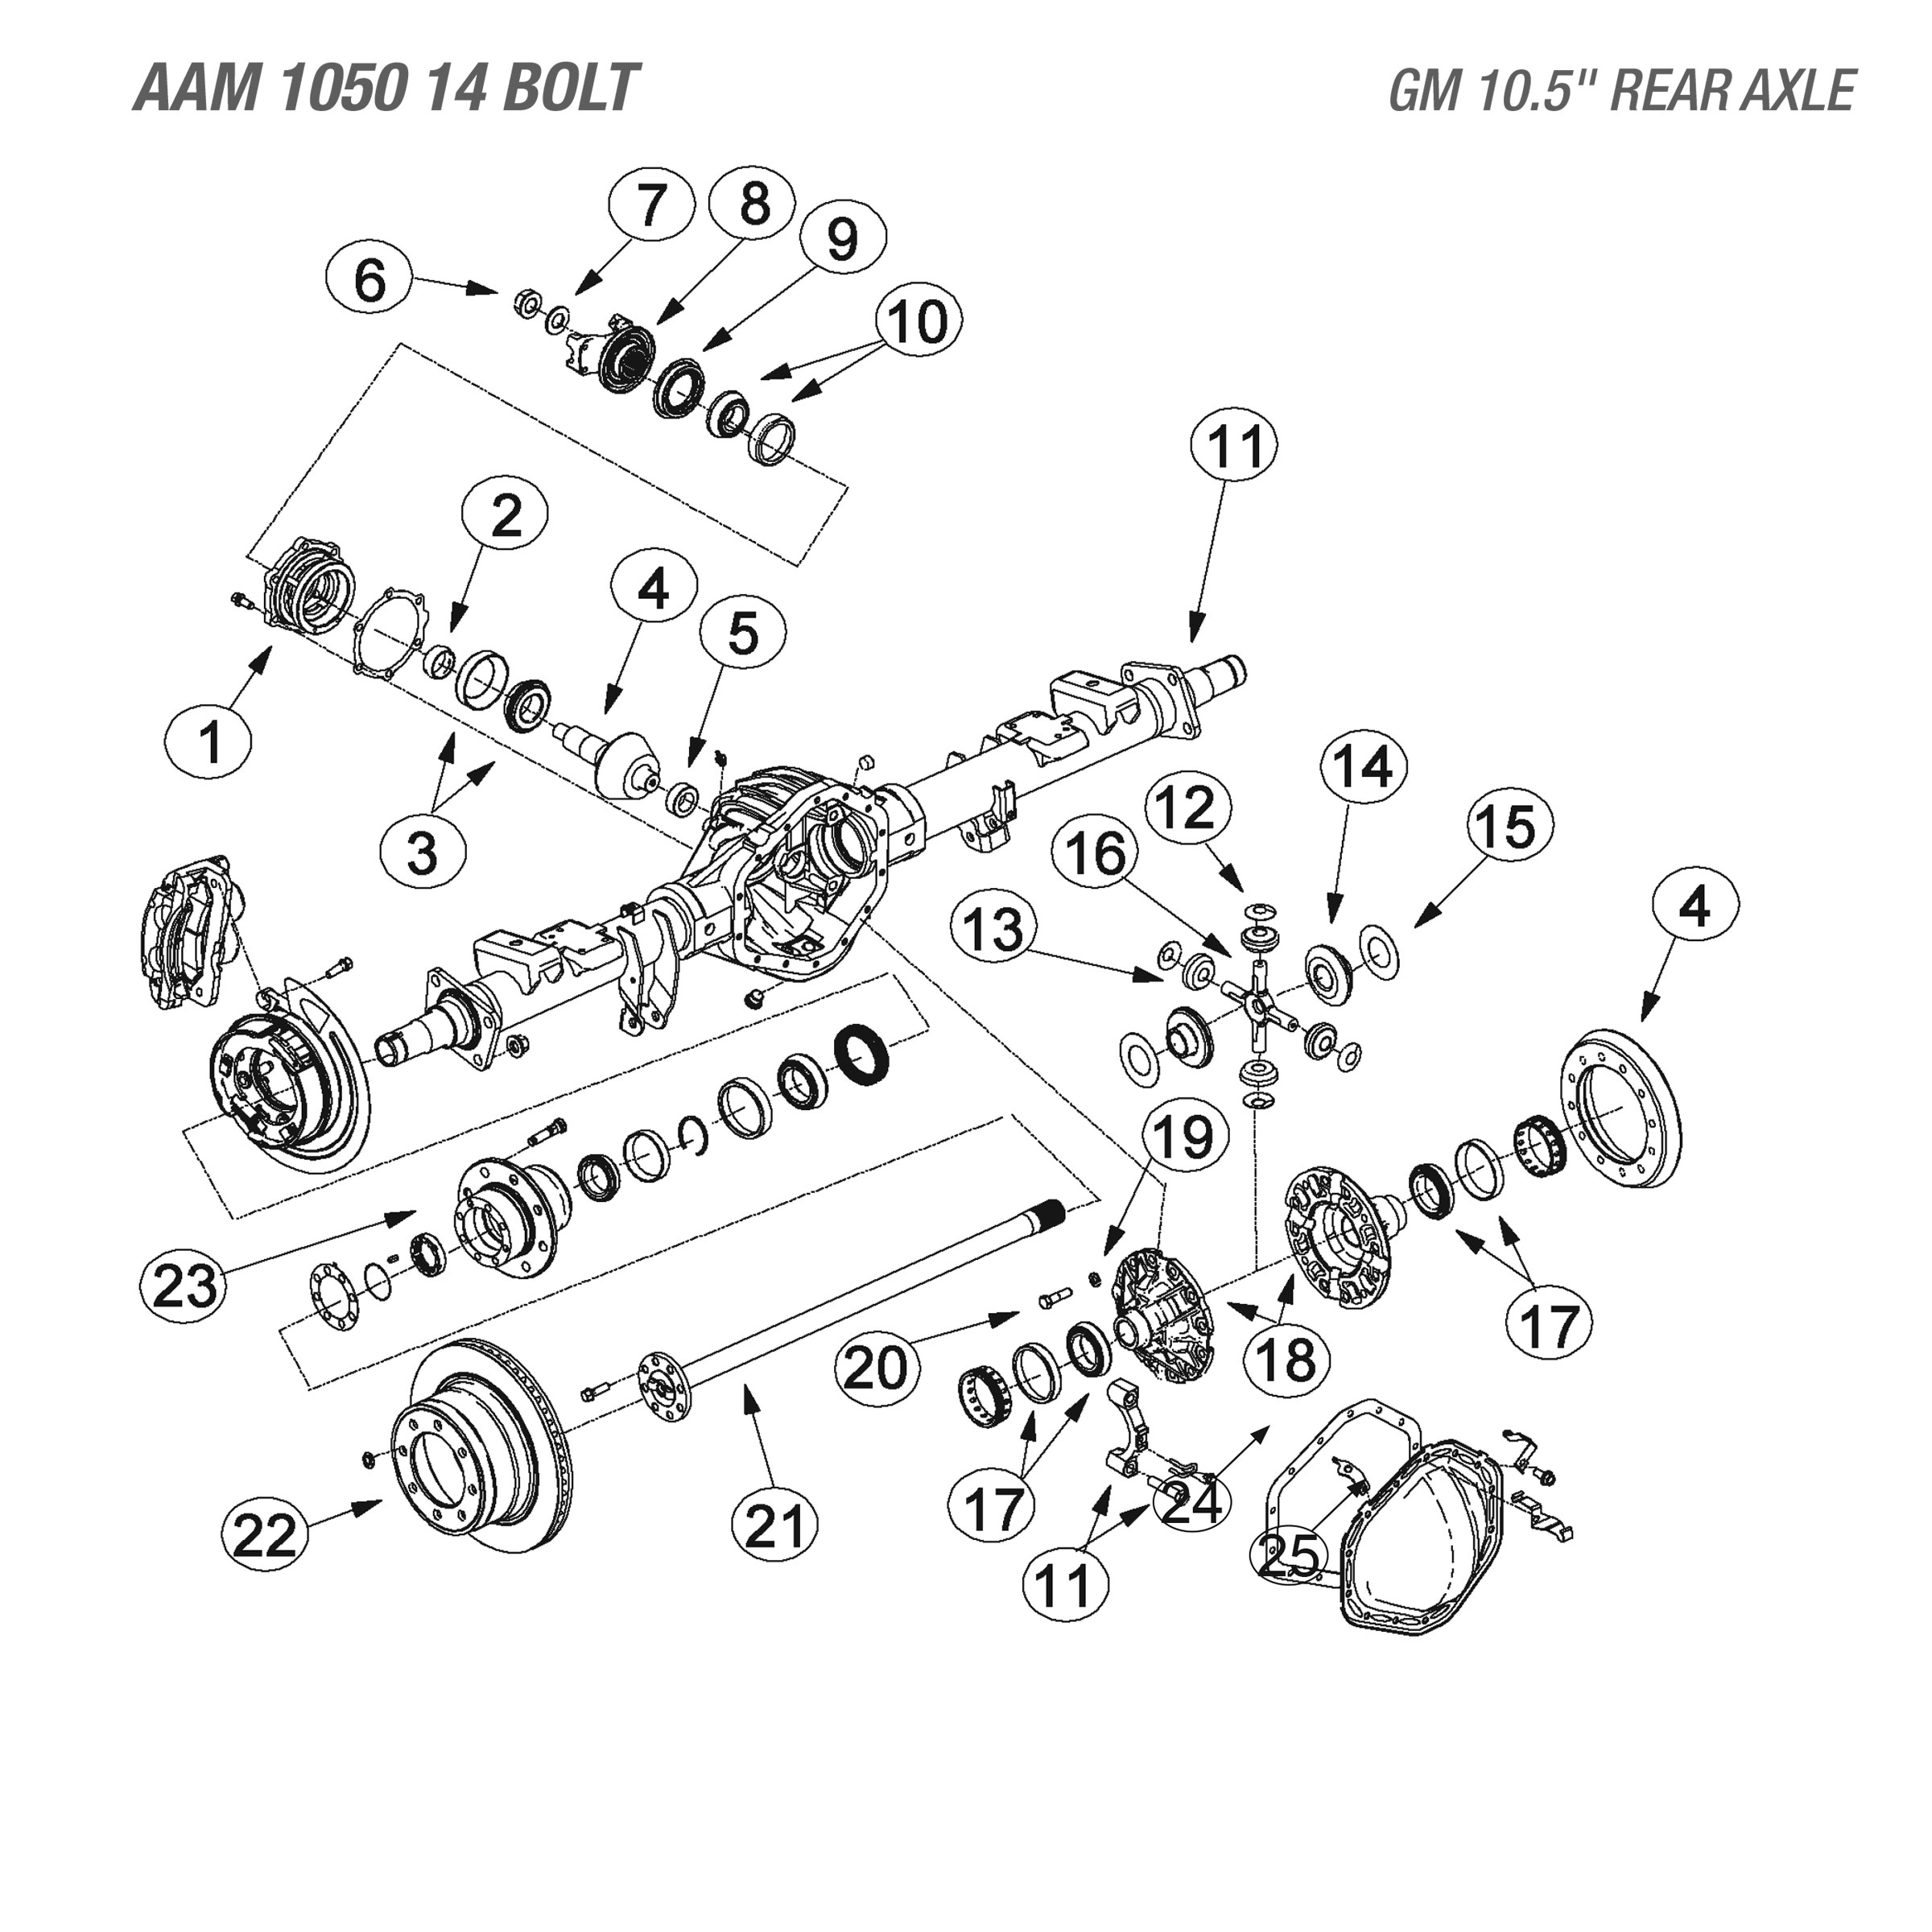 AAM 10.5 Rear Axle - Parts Diagram